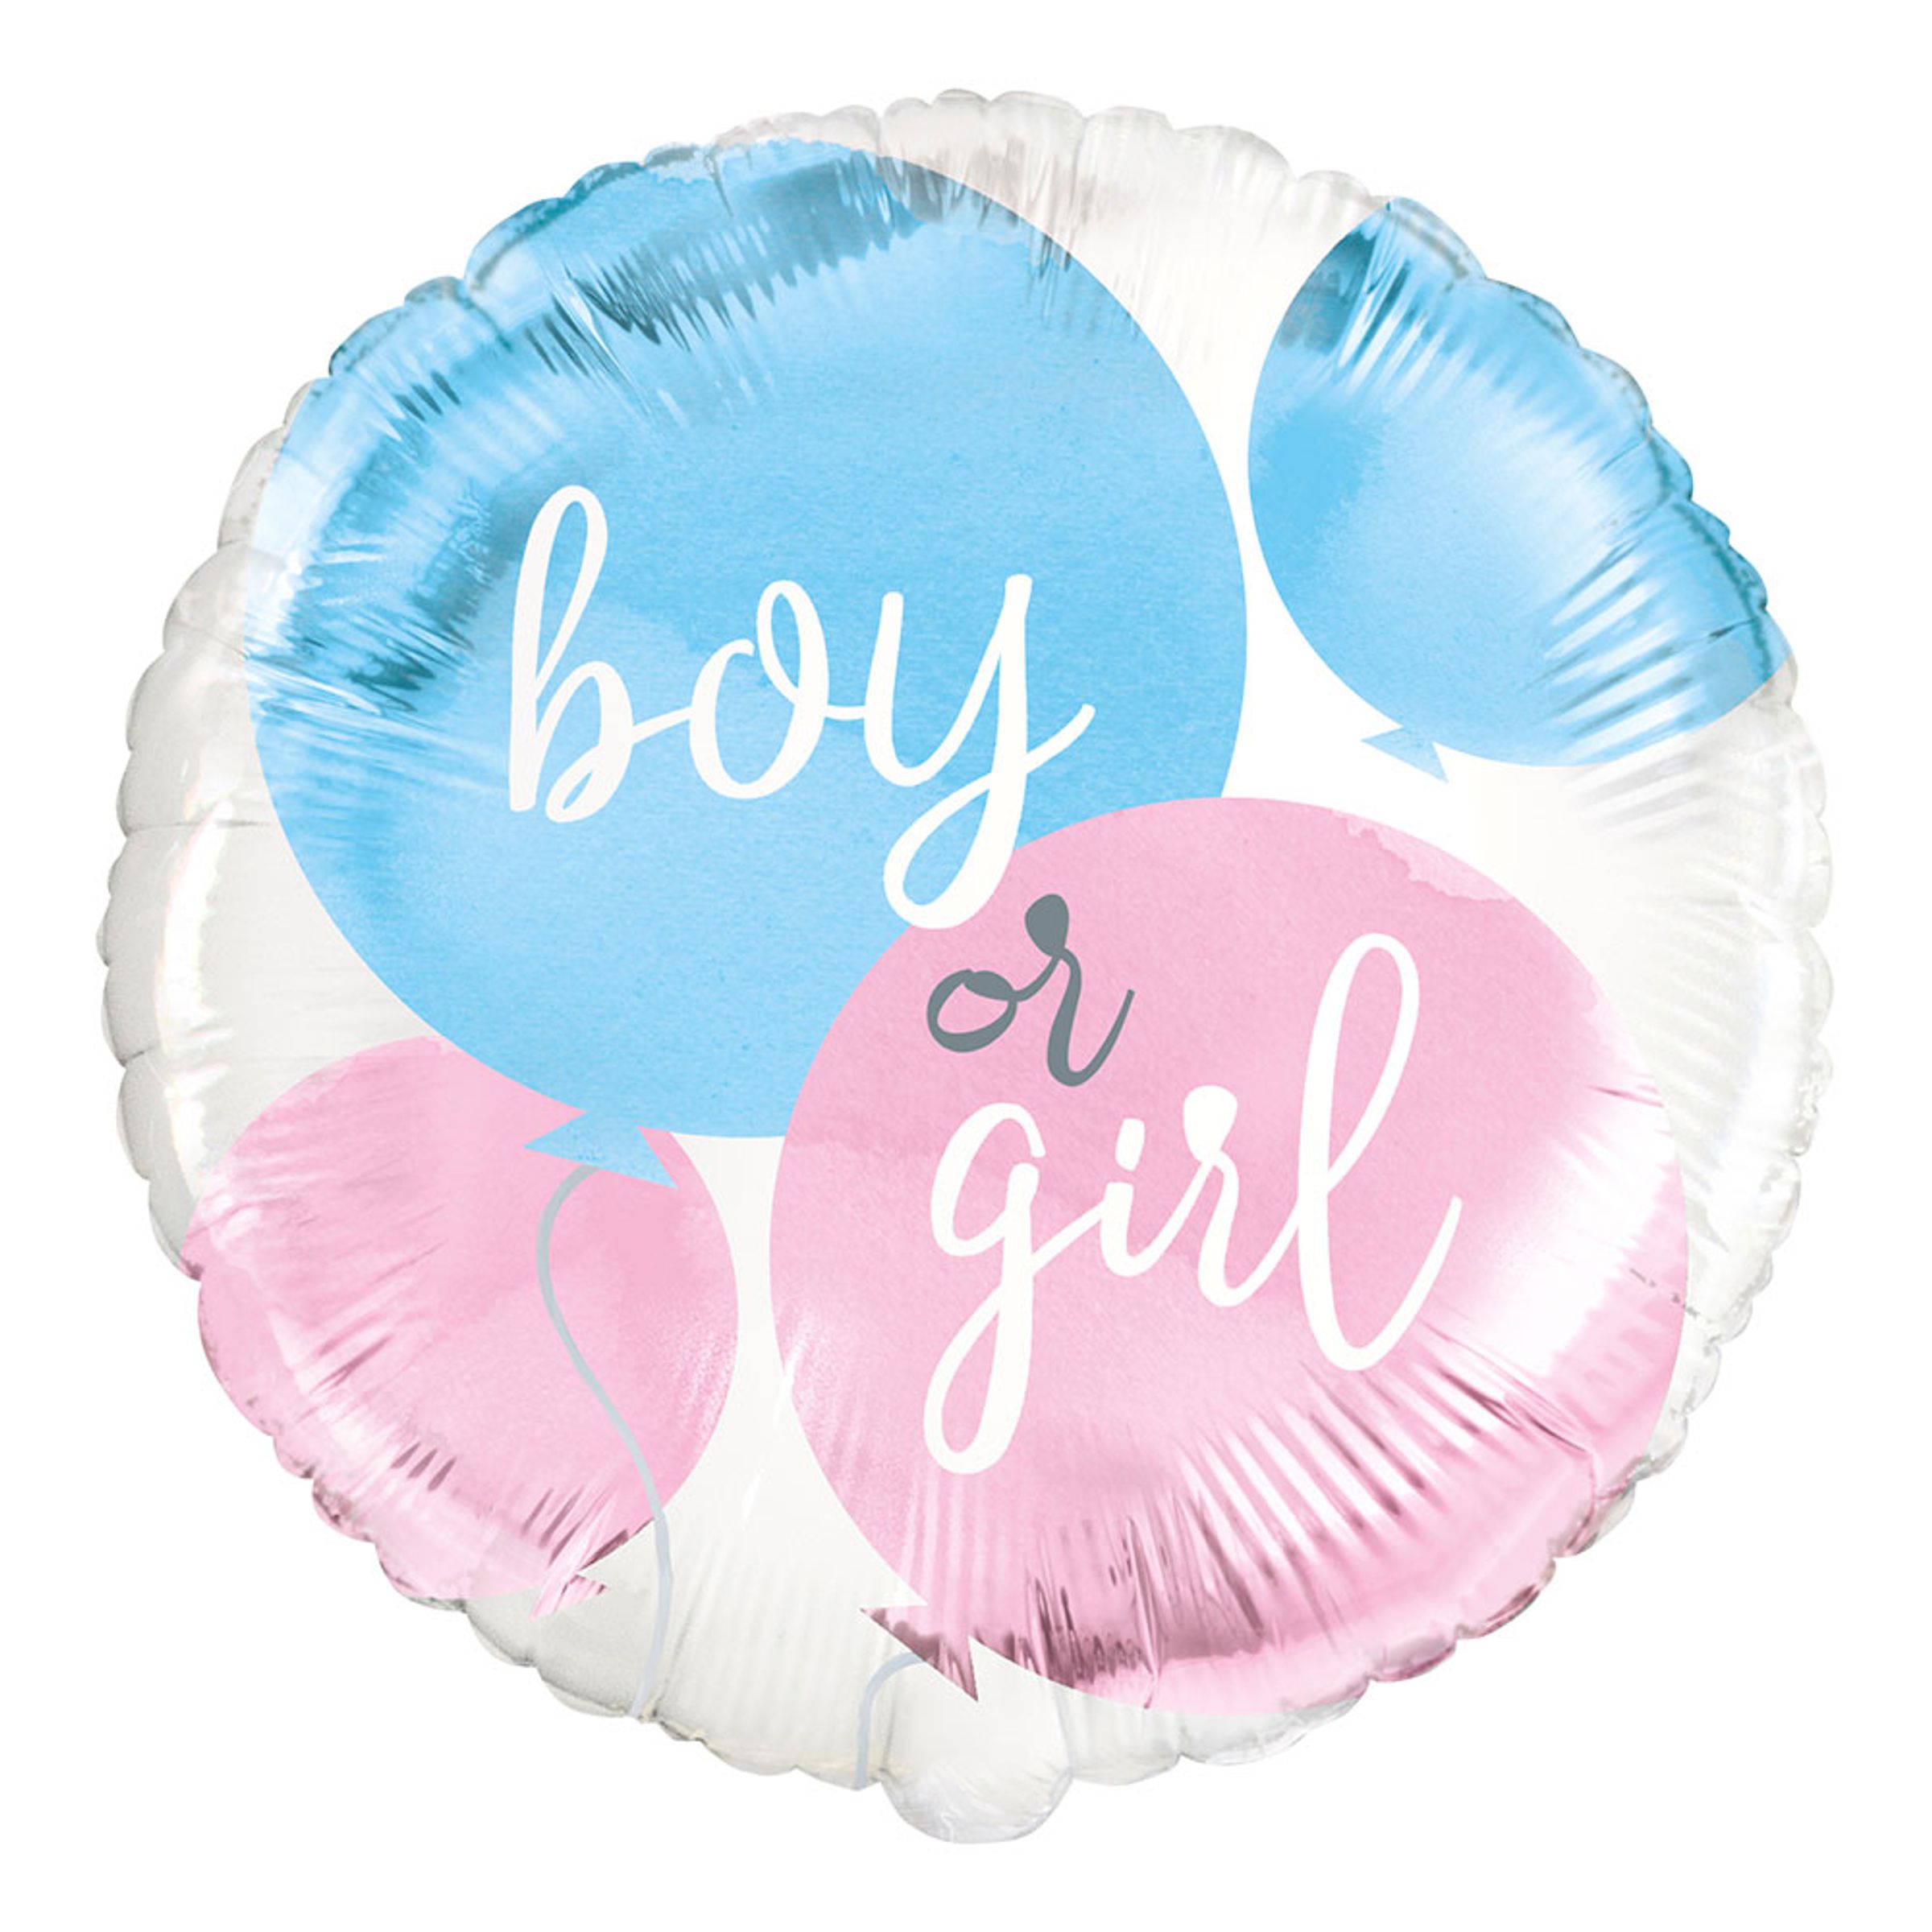 Folieballong Girl or Boy